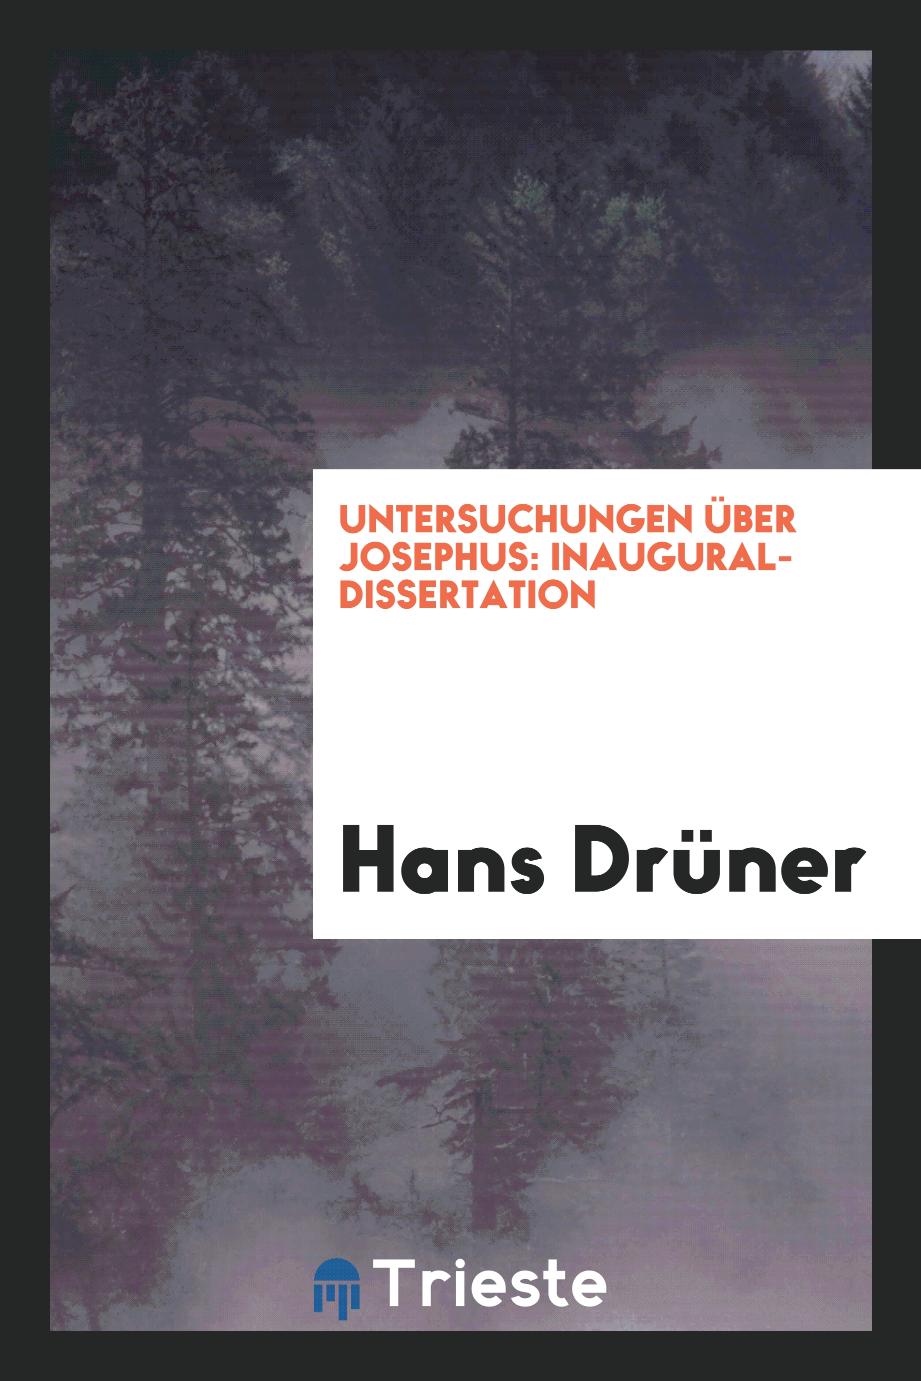 Hans Drüner - Untersuchungen über Josephus: Inaugural-Dissertation